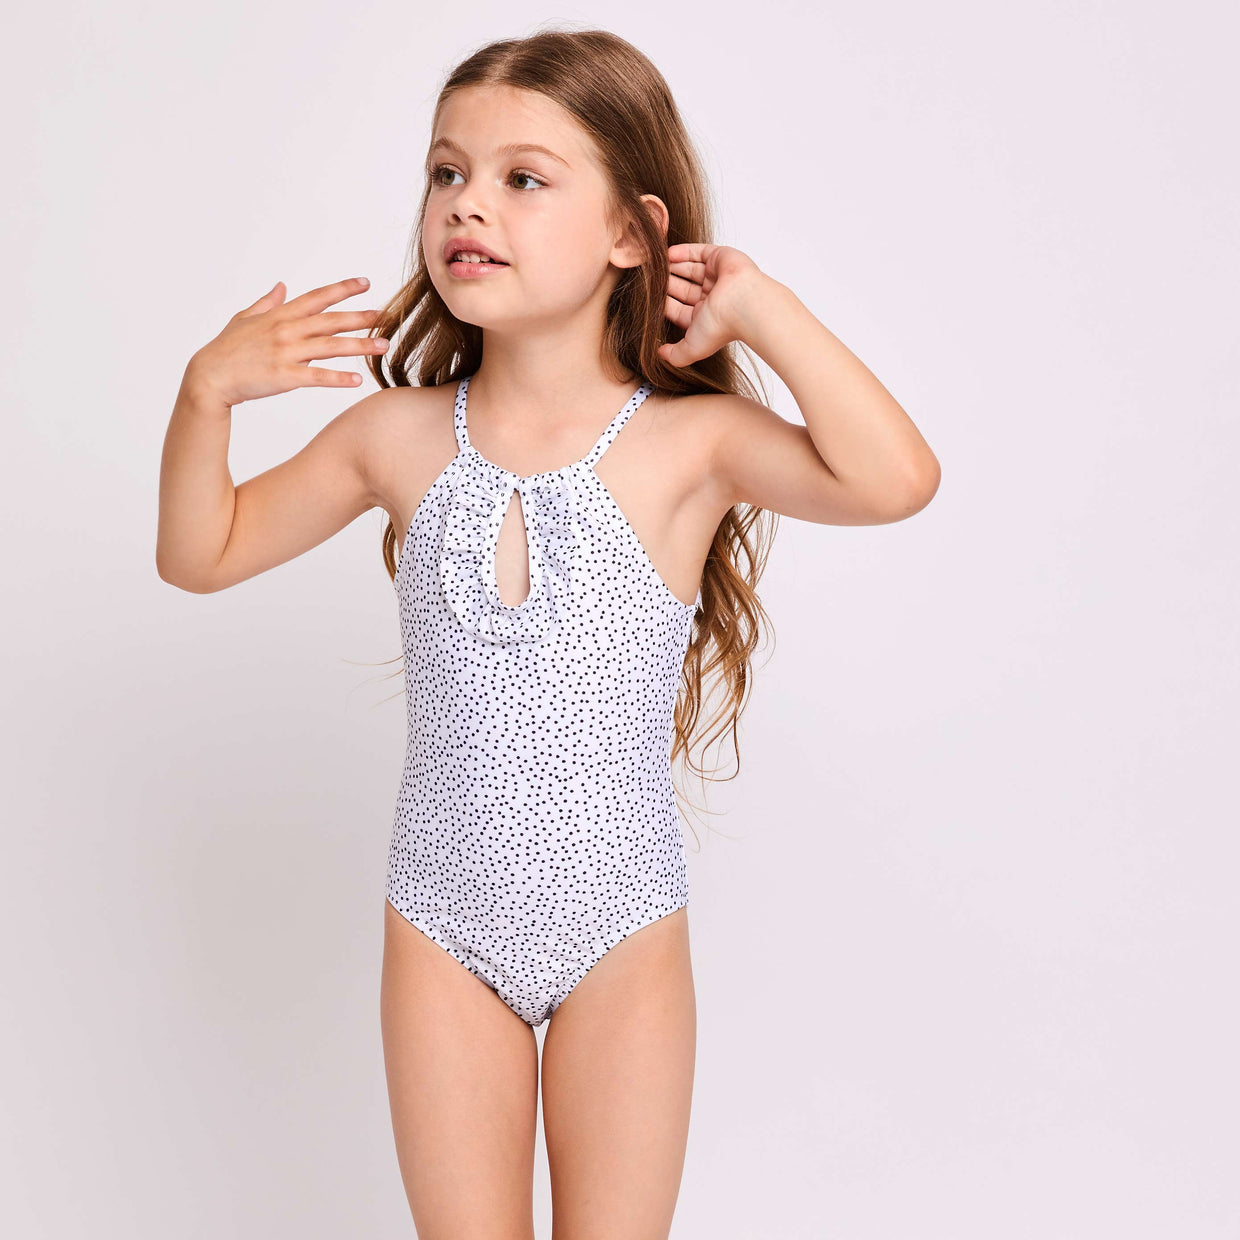 Little-Bonnie-swimsuit-and-Daliabikini-dots-white-contessa-volpi-summer-swimwear-collection